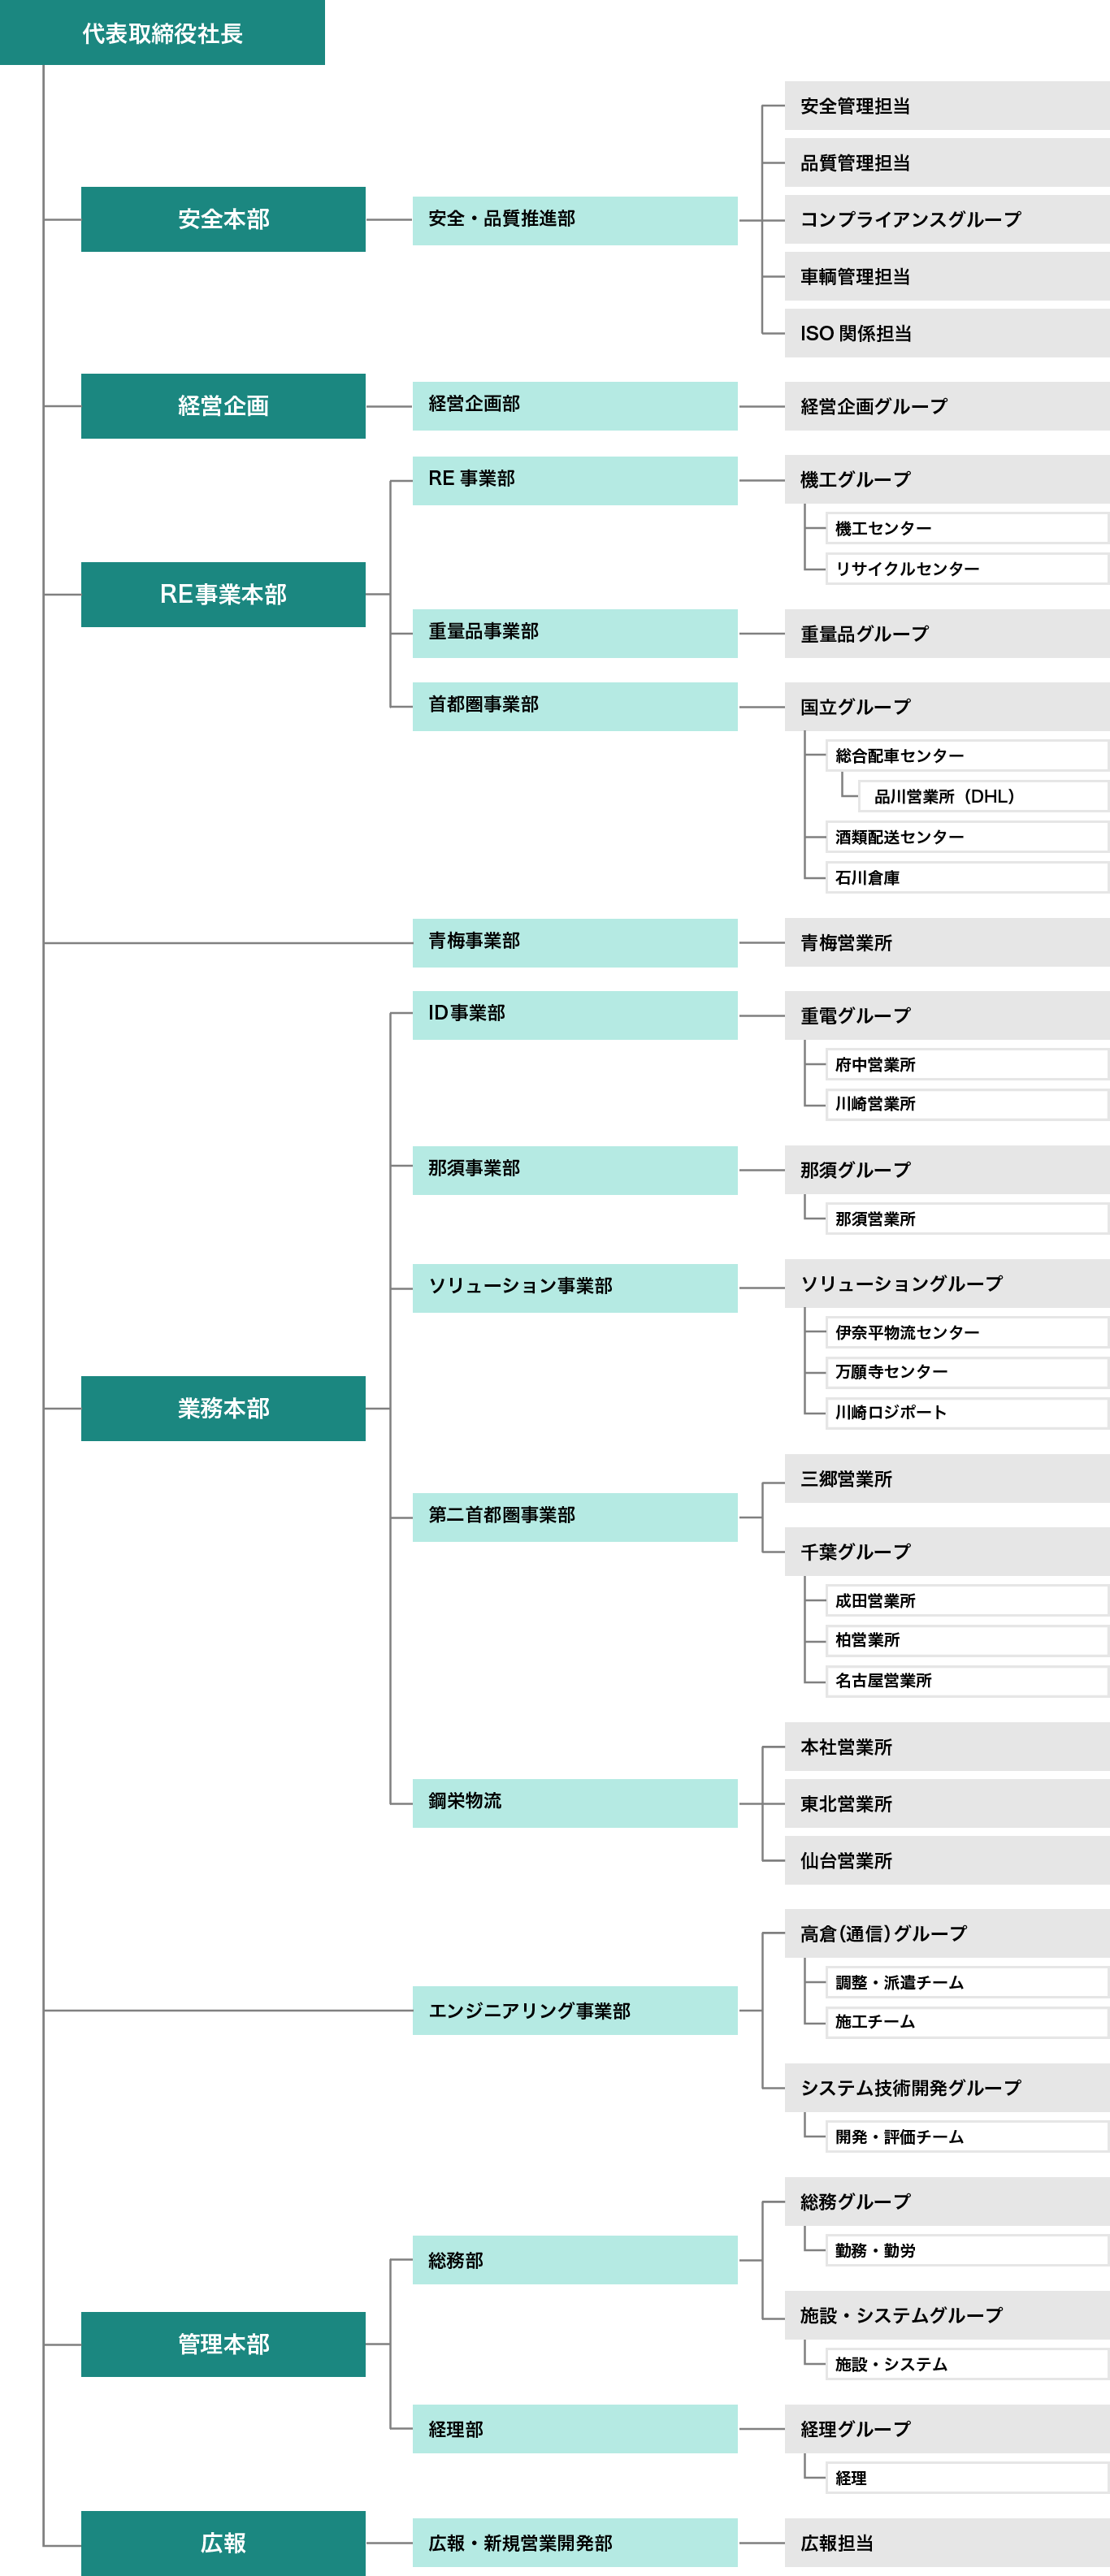 [図]新日本物流グループ組織図